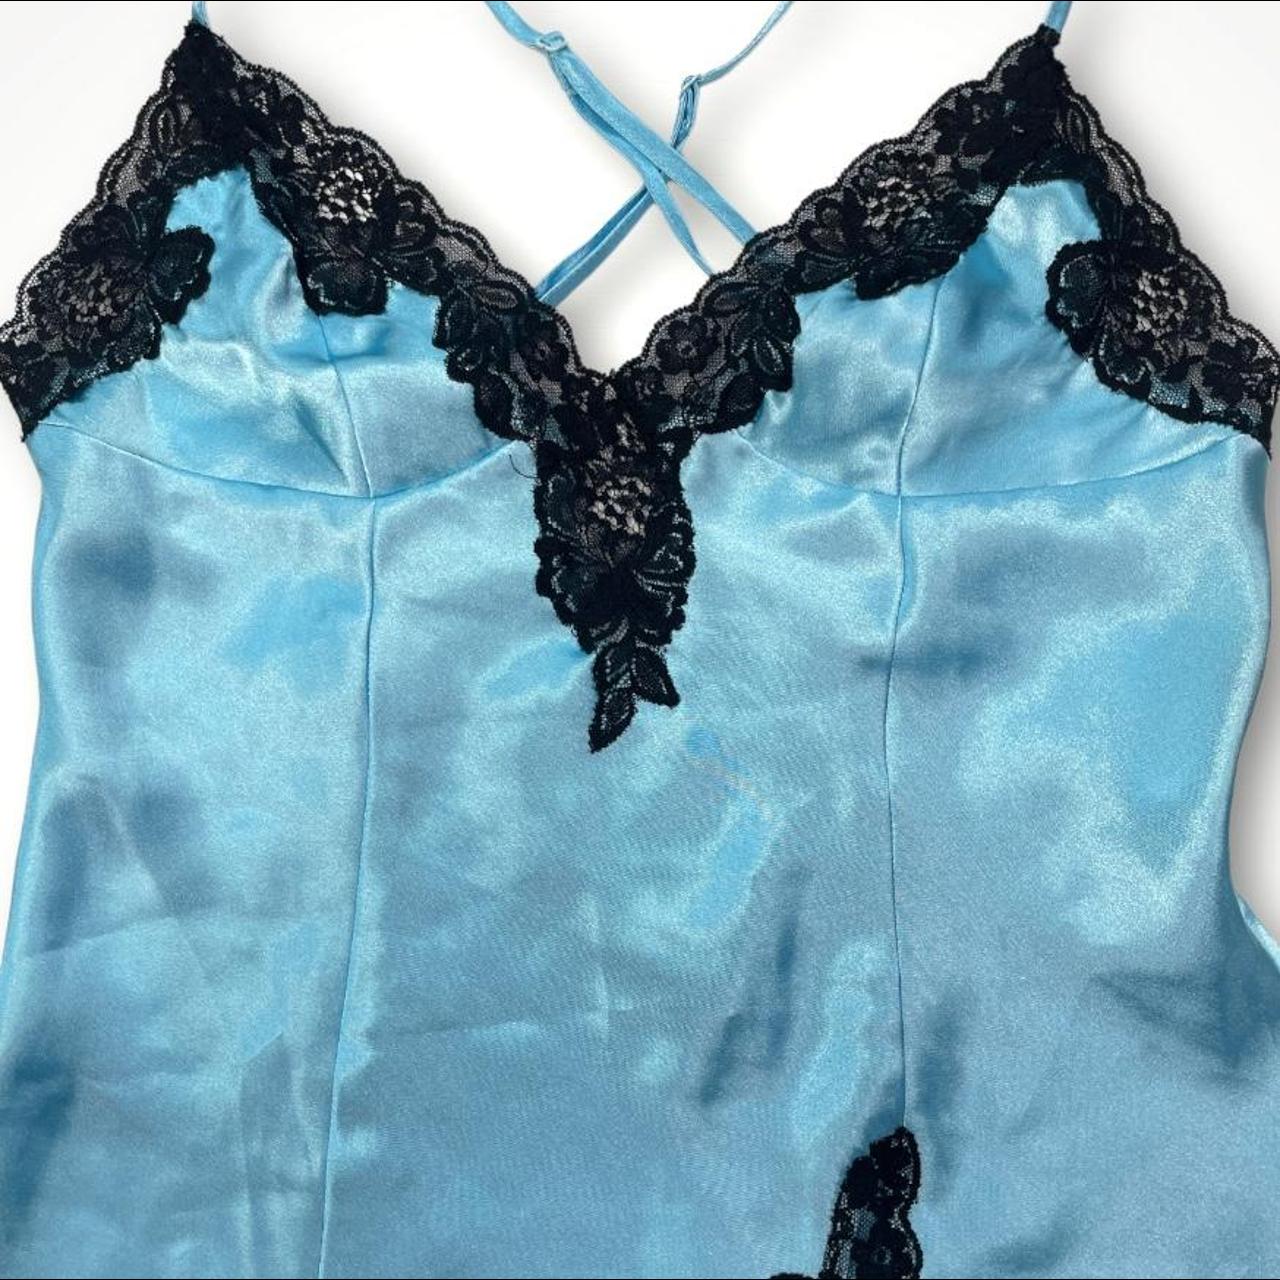 Product Image 3 - Vintage Y2K Blue Slip Dress

Similar